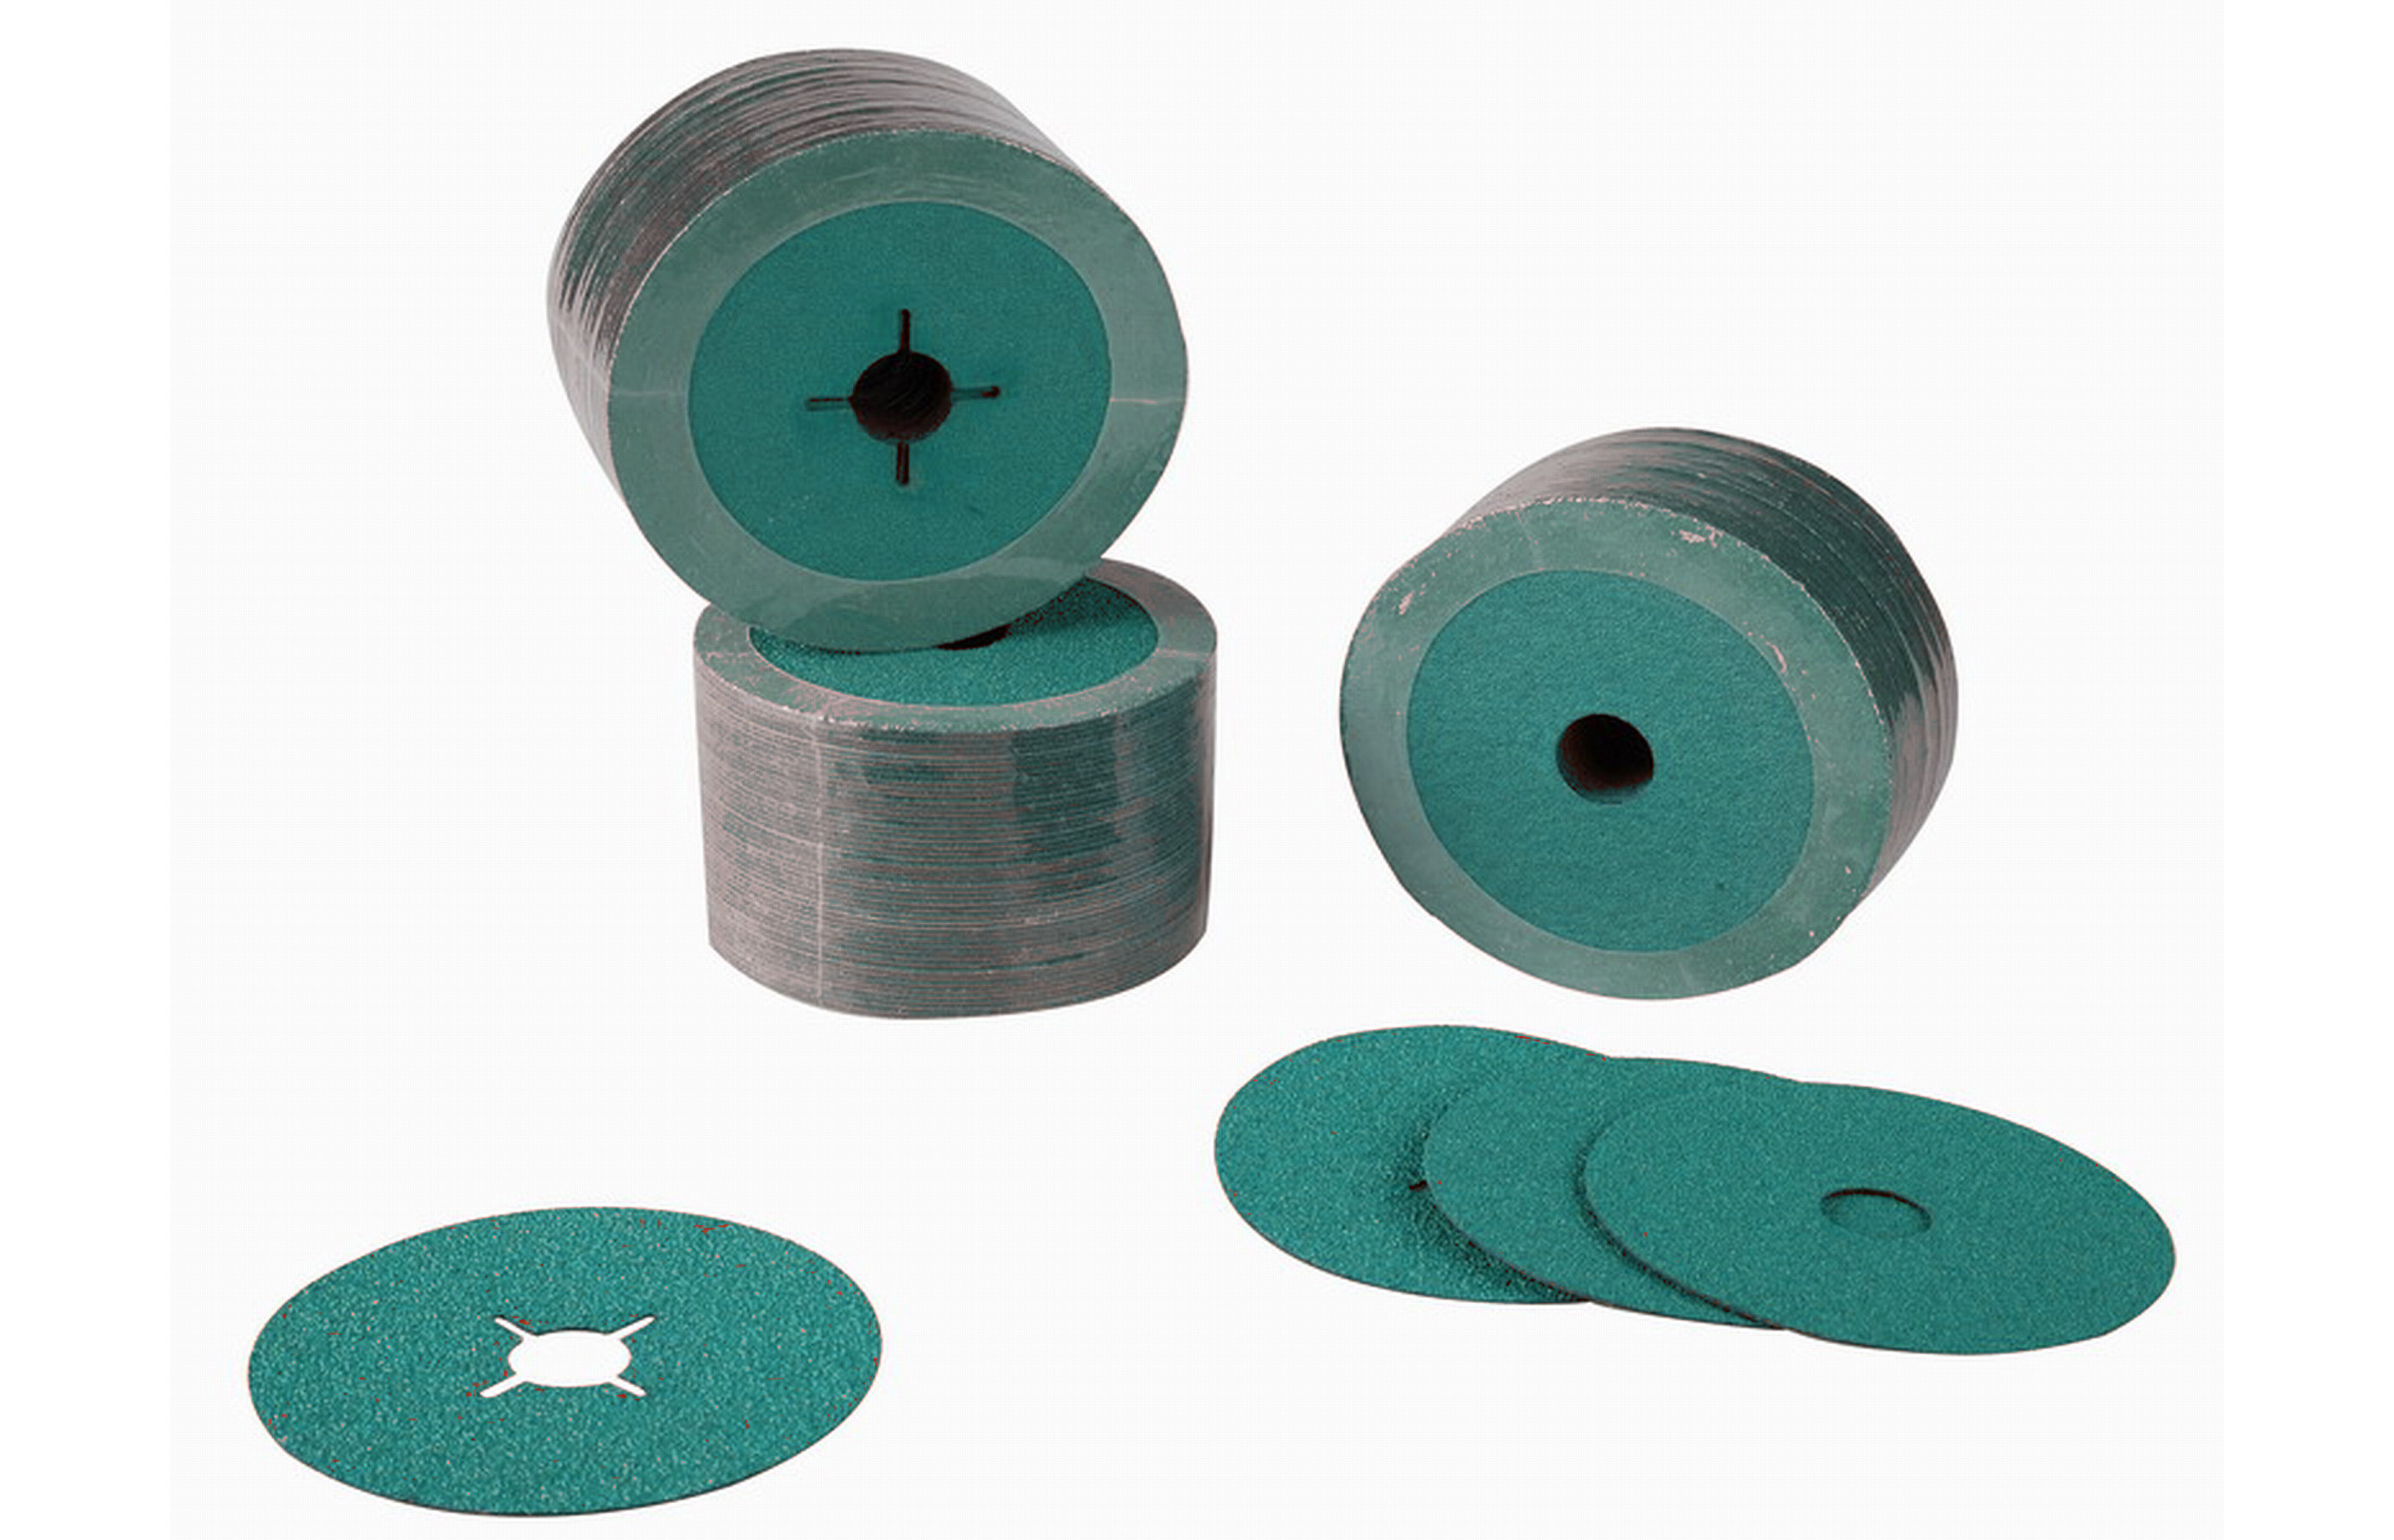 アルミニウム樹脂研摩繊維ディスク繊維紙やすりで磨くディスク研摩繊維ディスク